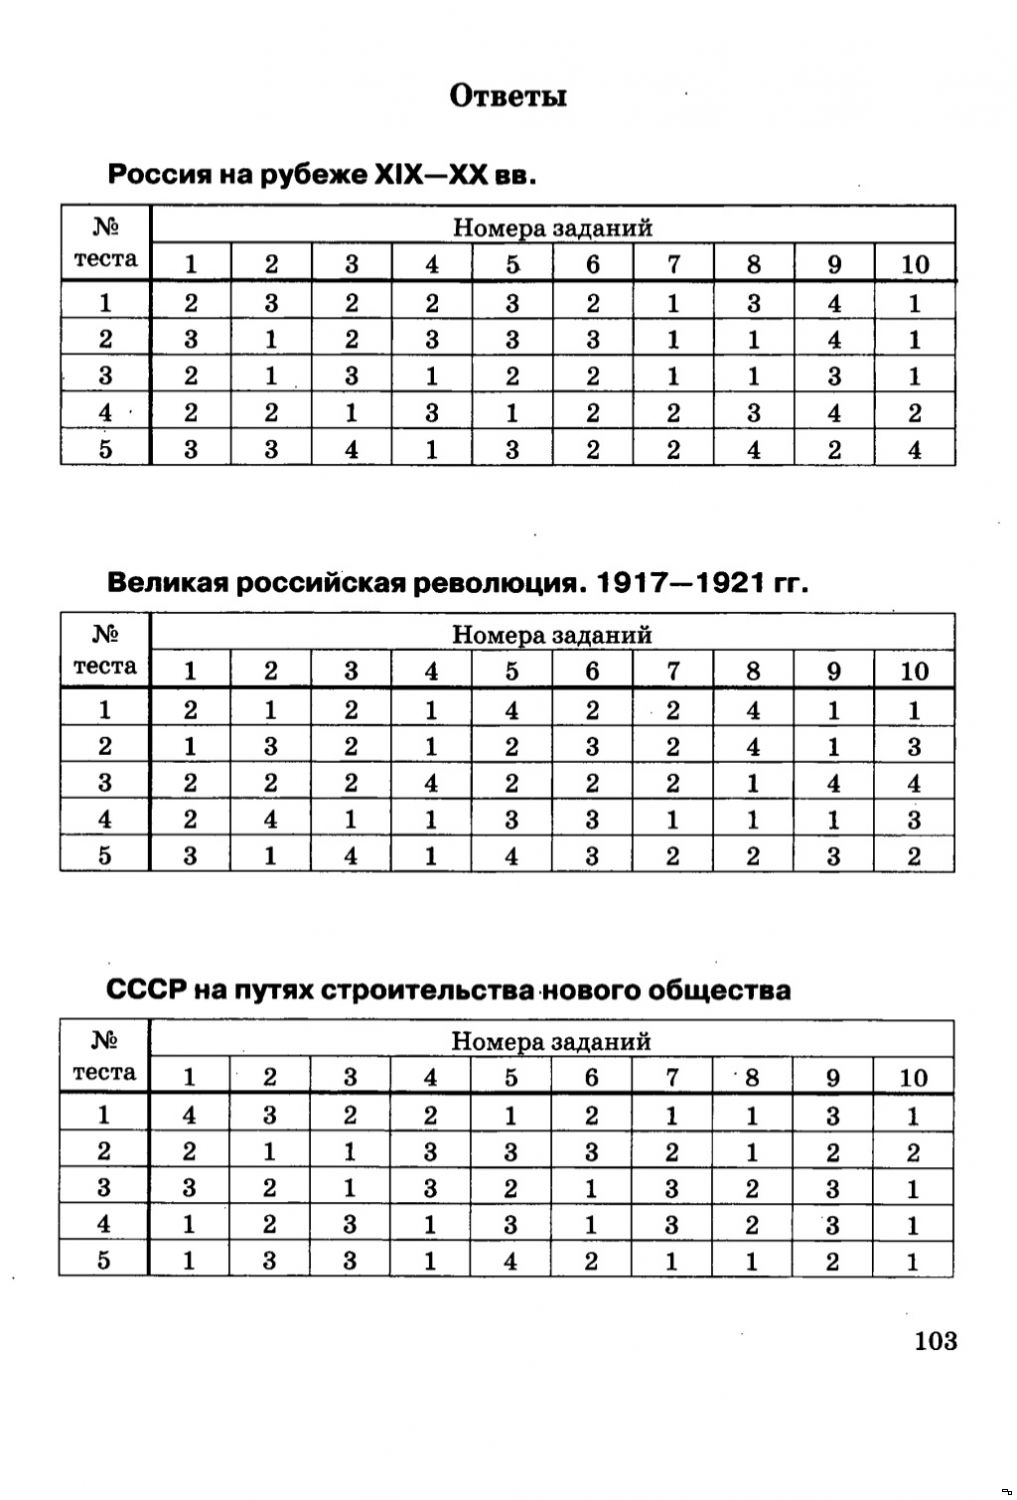 Тесты по истории россии для 10 класса 9 16 века